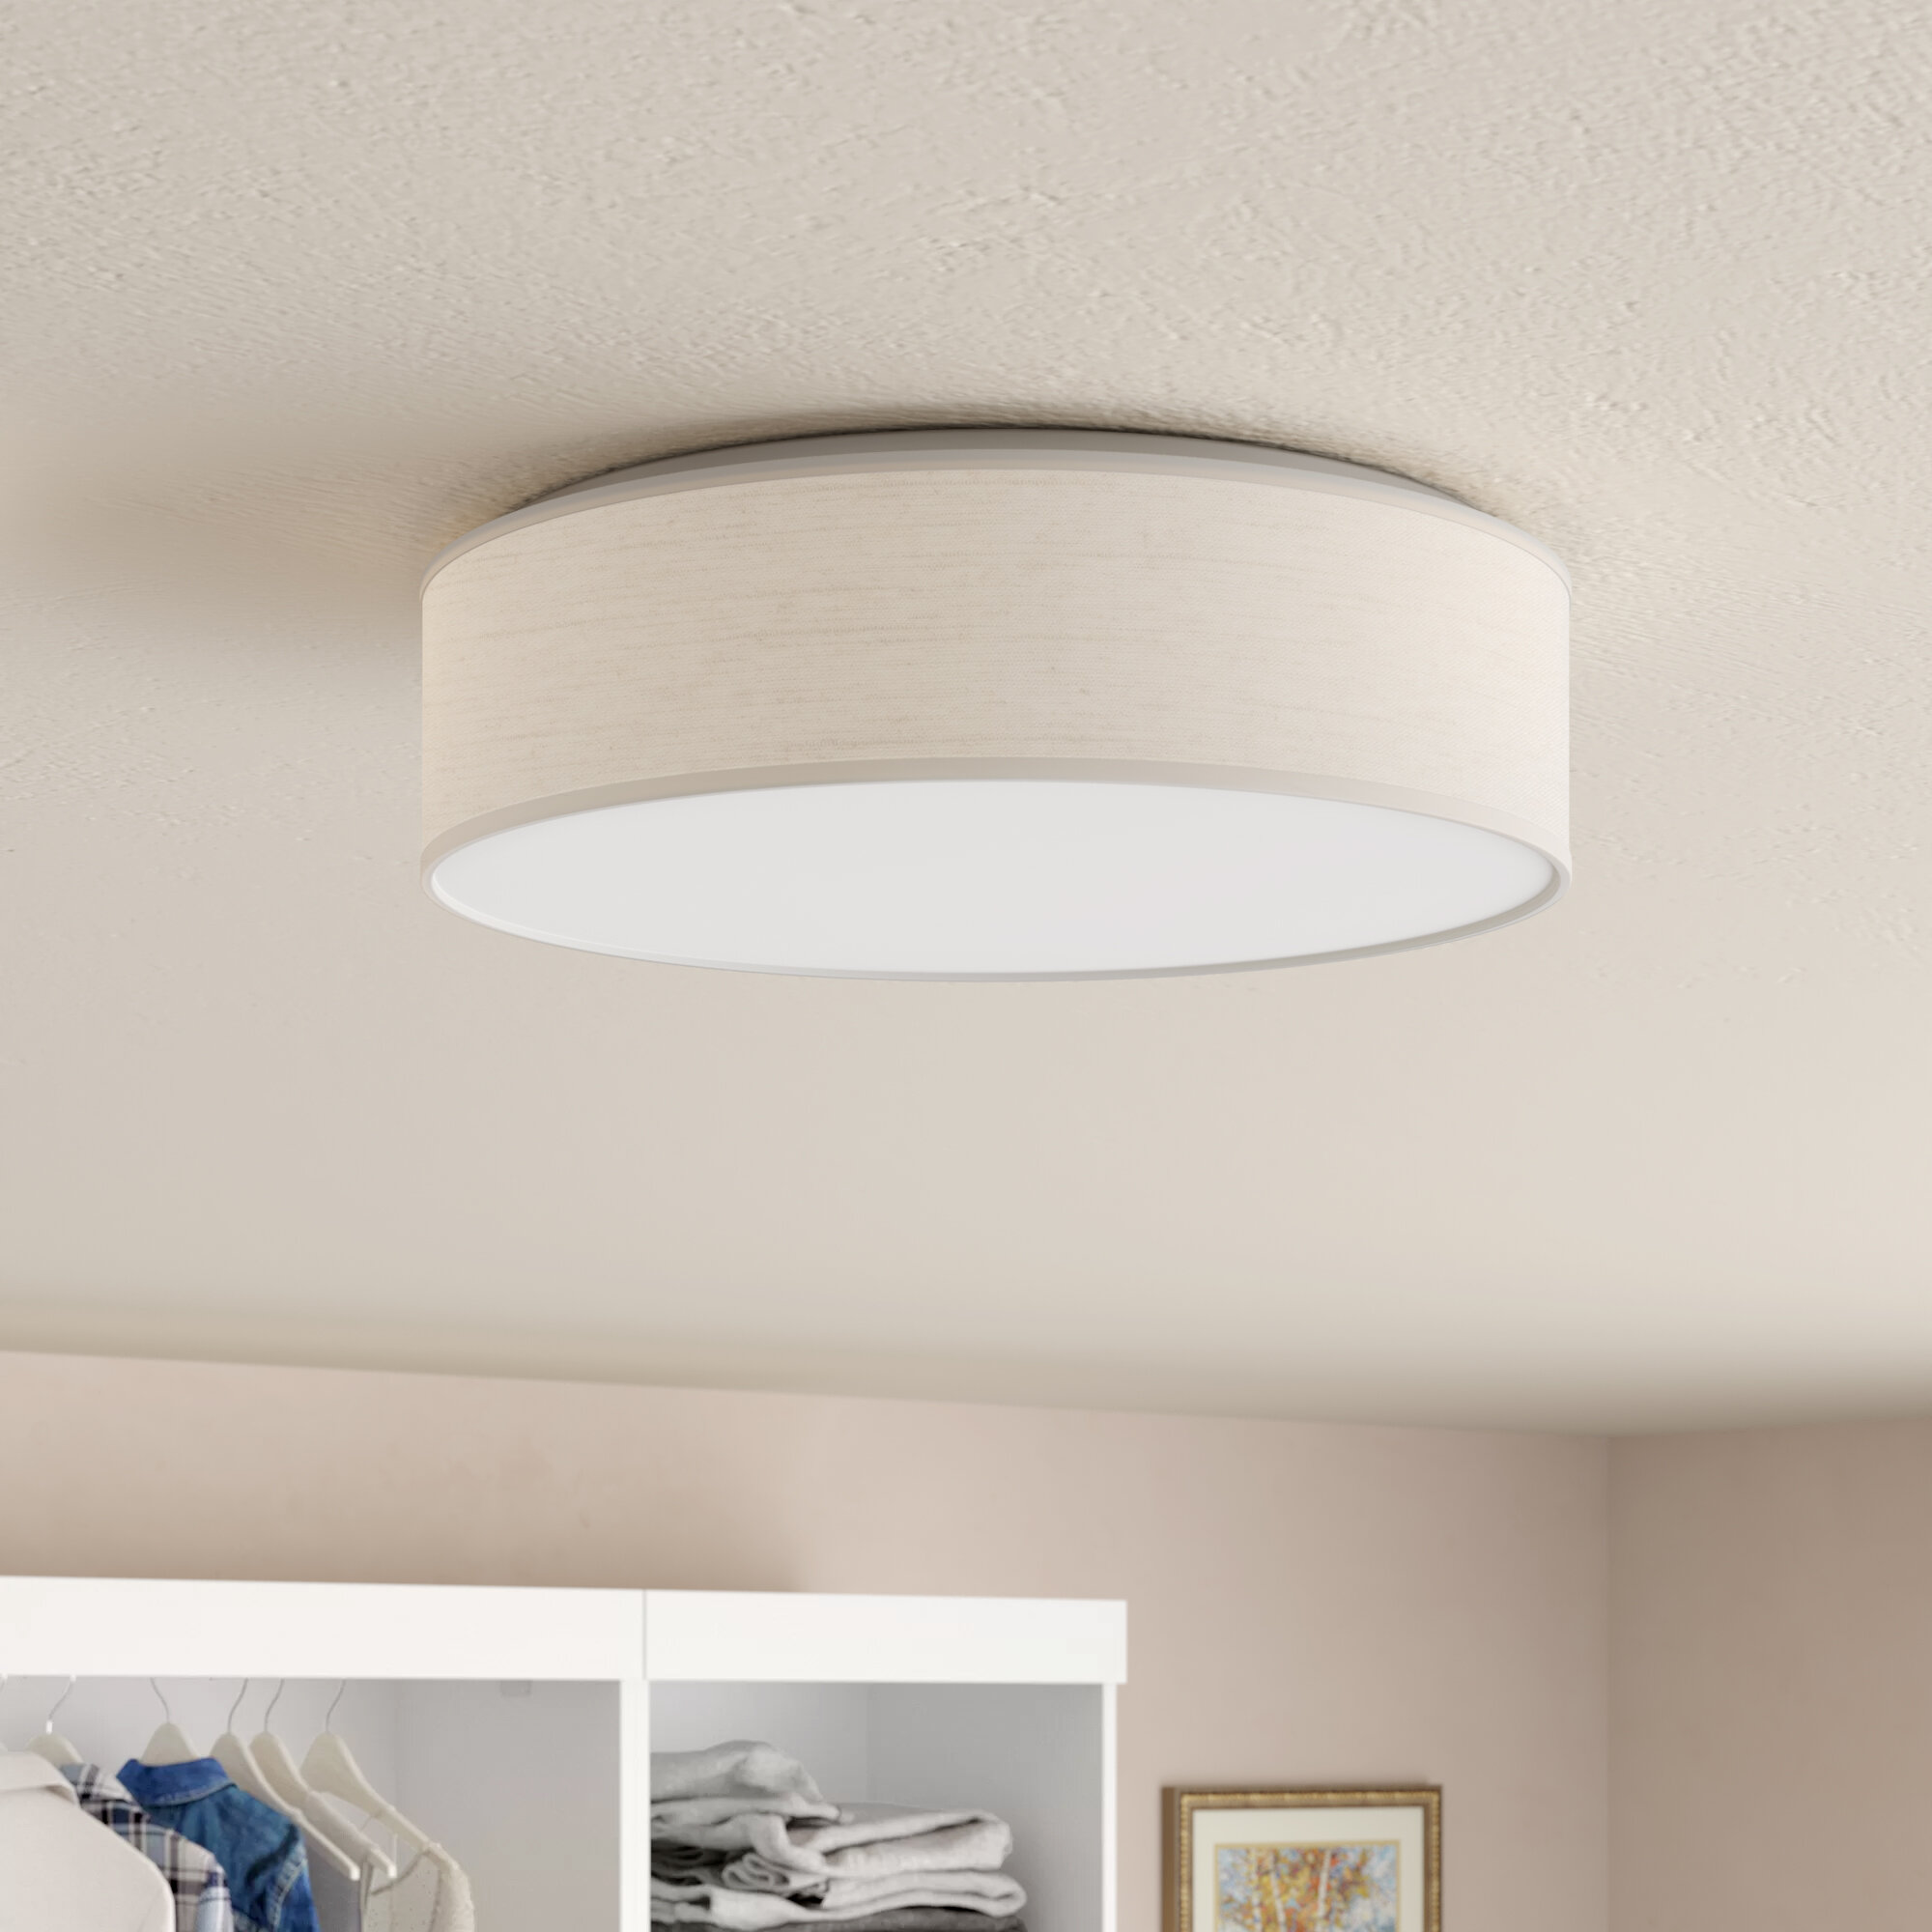 Modern Ceiling Lighting Flushmount Light Fixture For Bedroom Bathroom US STOCK 